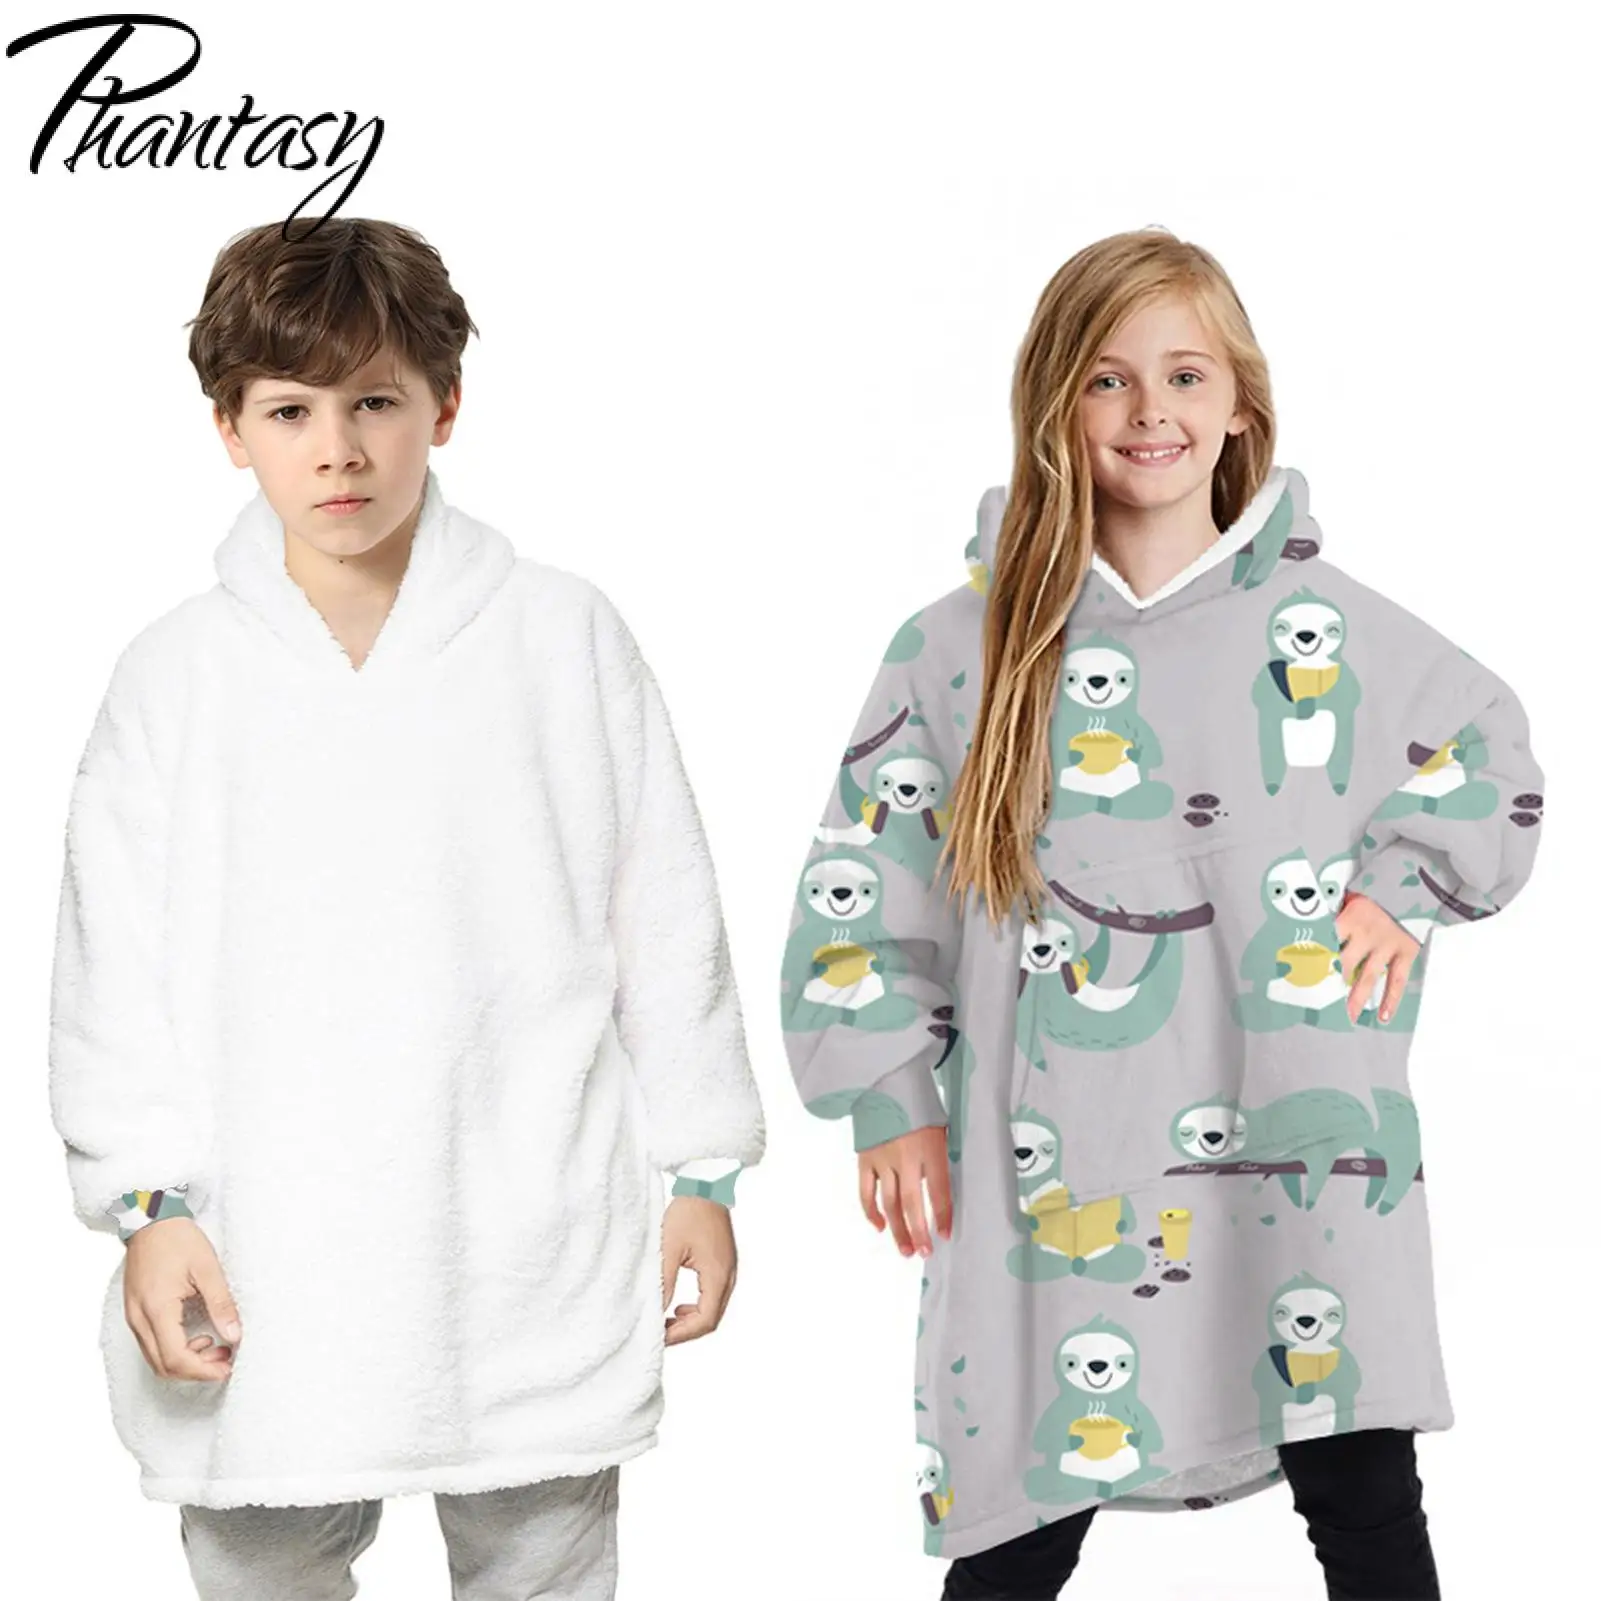 Phantasy Inverno Avisar Cobertor Pijama Infantil dos desenhos animados de Impressão Casacos de Moletom Ano Novo com Capuz Outwear Pulôver de Meninos Meninas rapazes raparigas